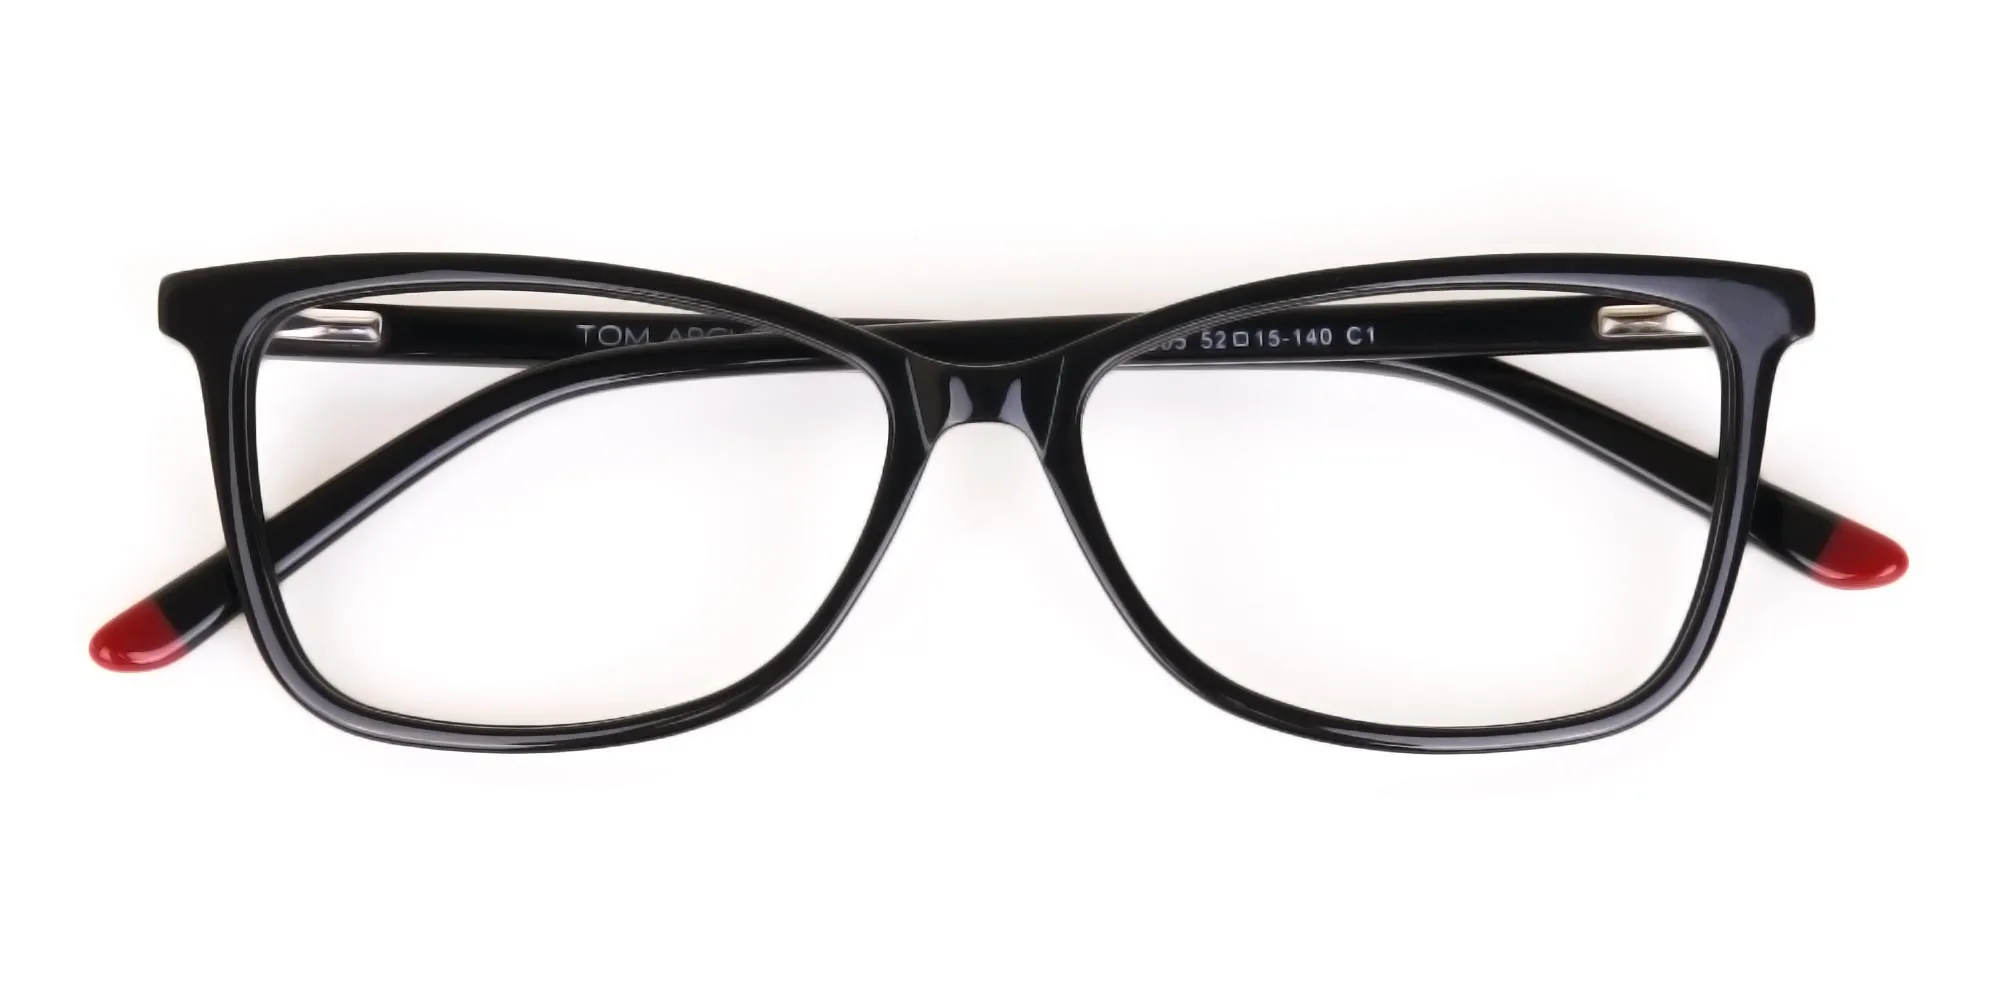 Black Cat-Eye Rectangular Eyeglasses Frame Women -2